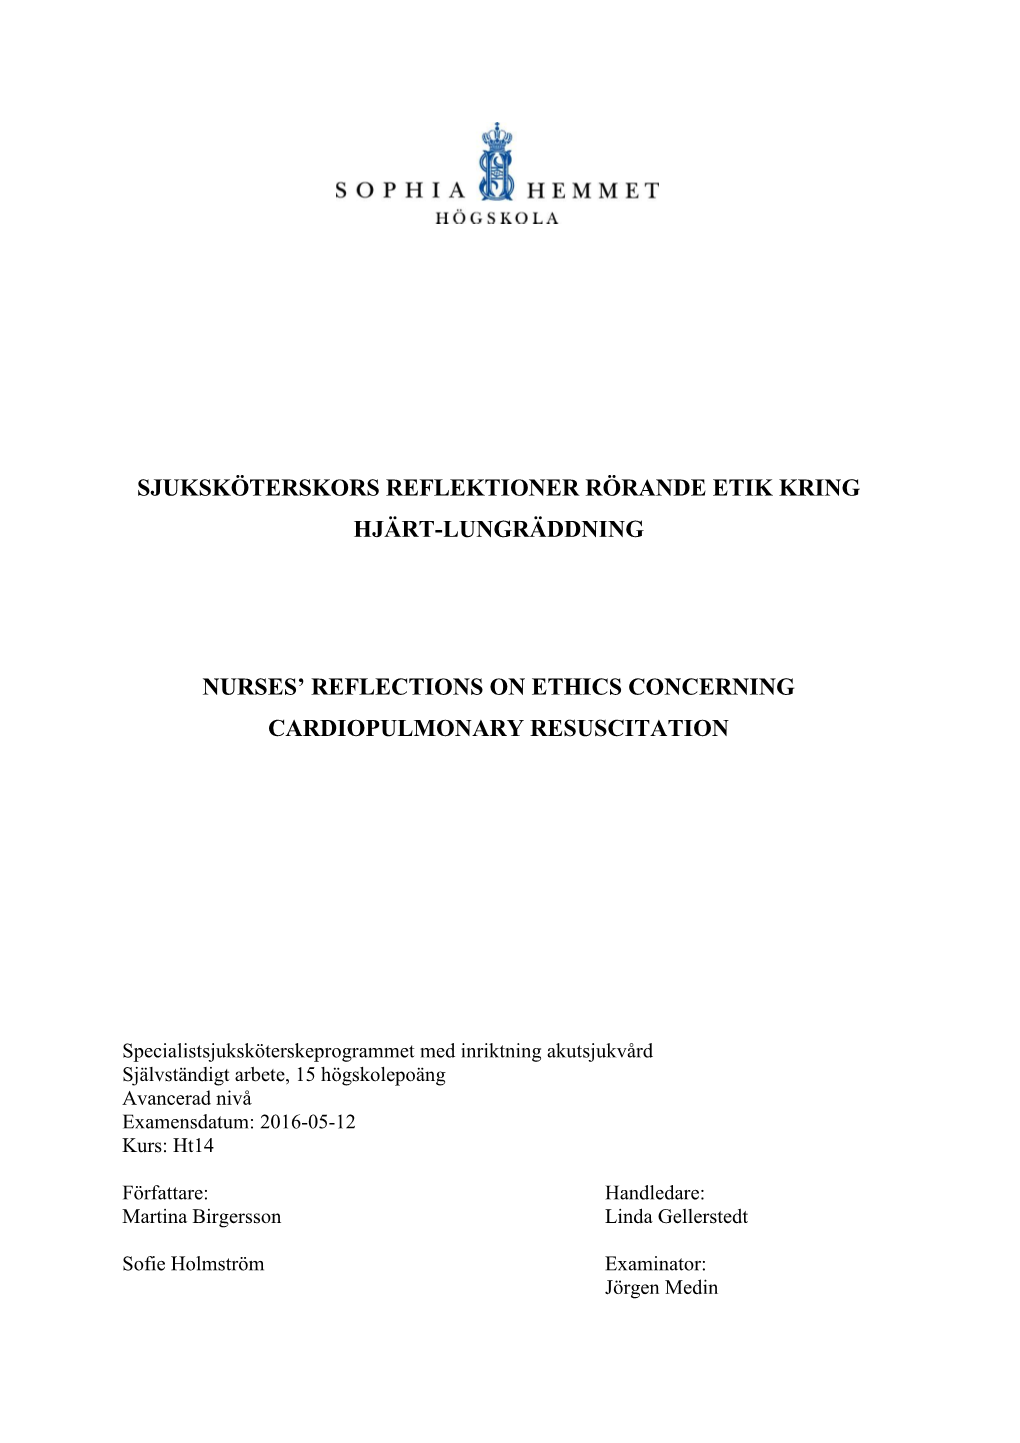 Sjuksköterskors Reflektioner Rörande Etik Kring Hjärt-Lungräddning